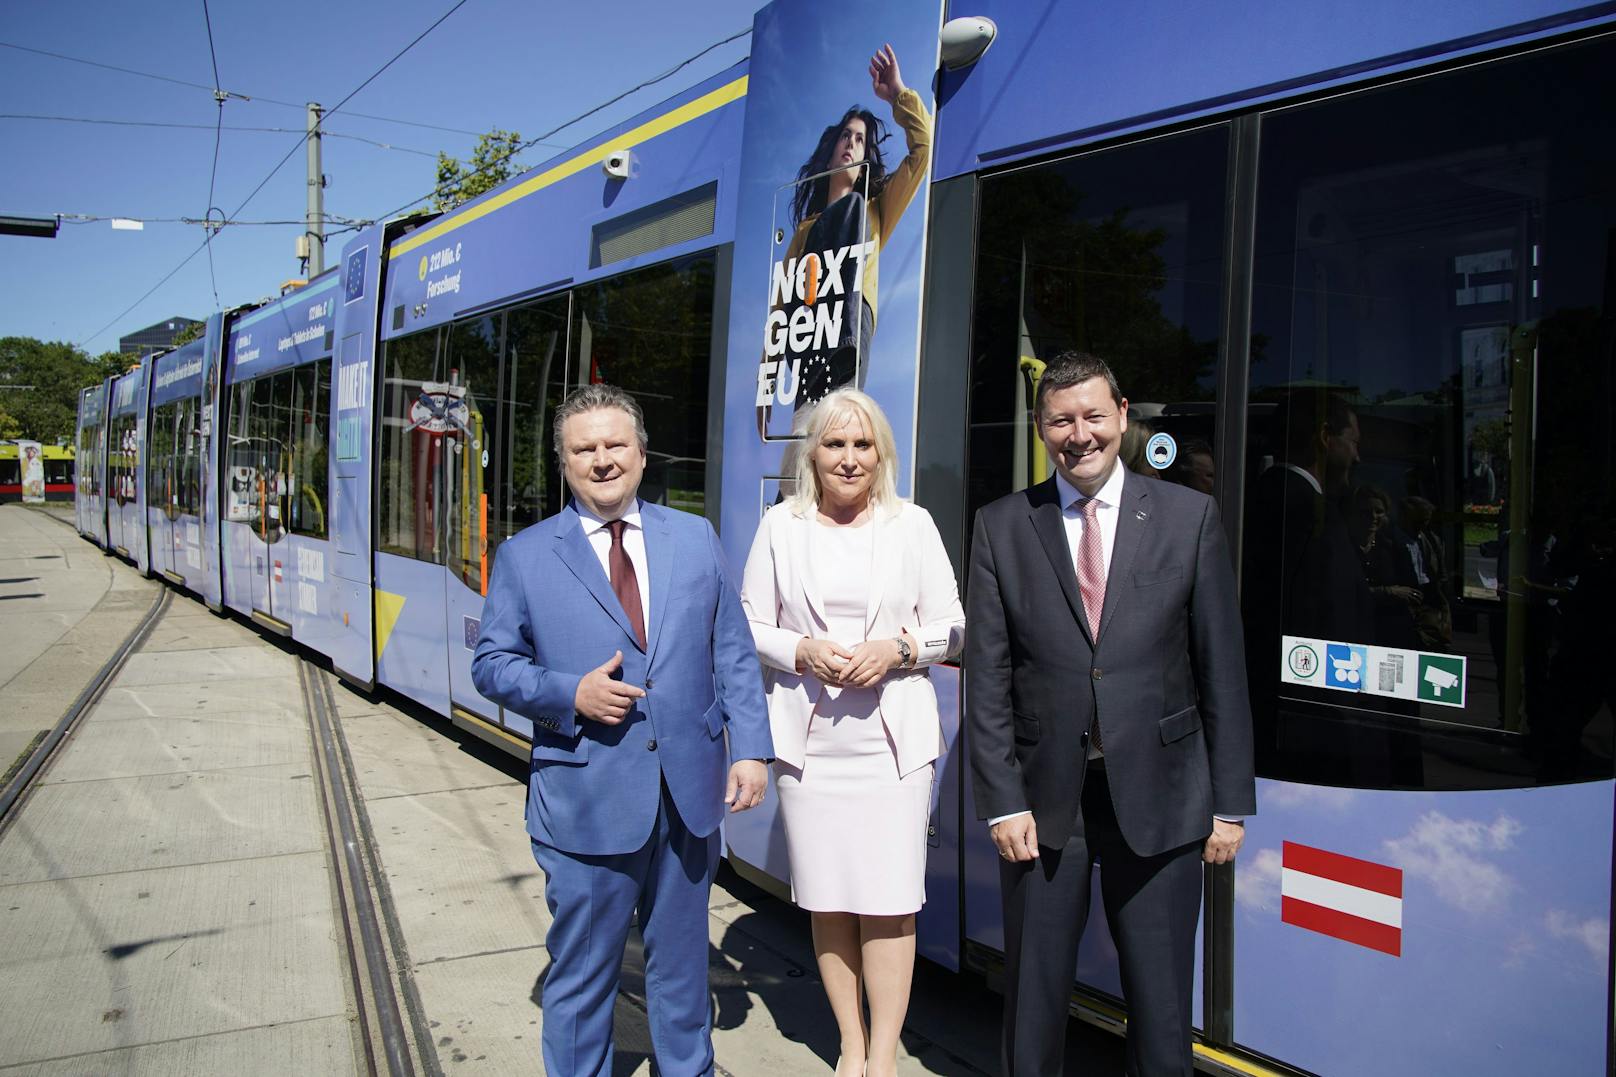 Bürgermeister Michael Ludwig, ÖVP-Delegationsleiterin im EU-Parlament Angelika Winzig und EU-Botschafter Martin Selmayr weihten die neue Wiener Straßenbahn ein.